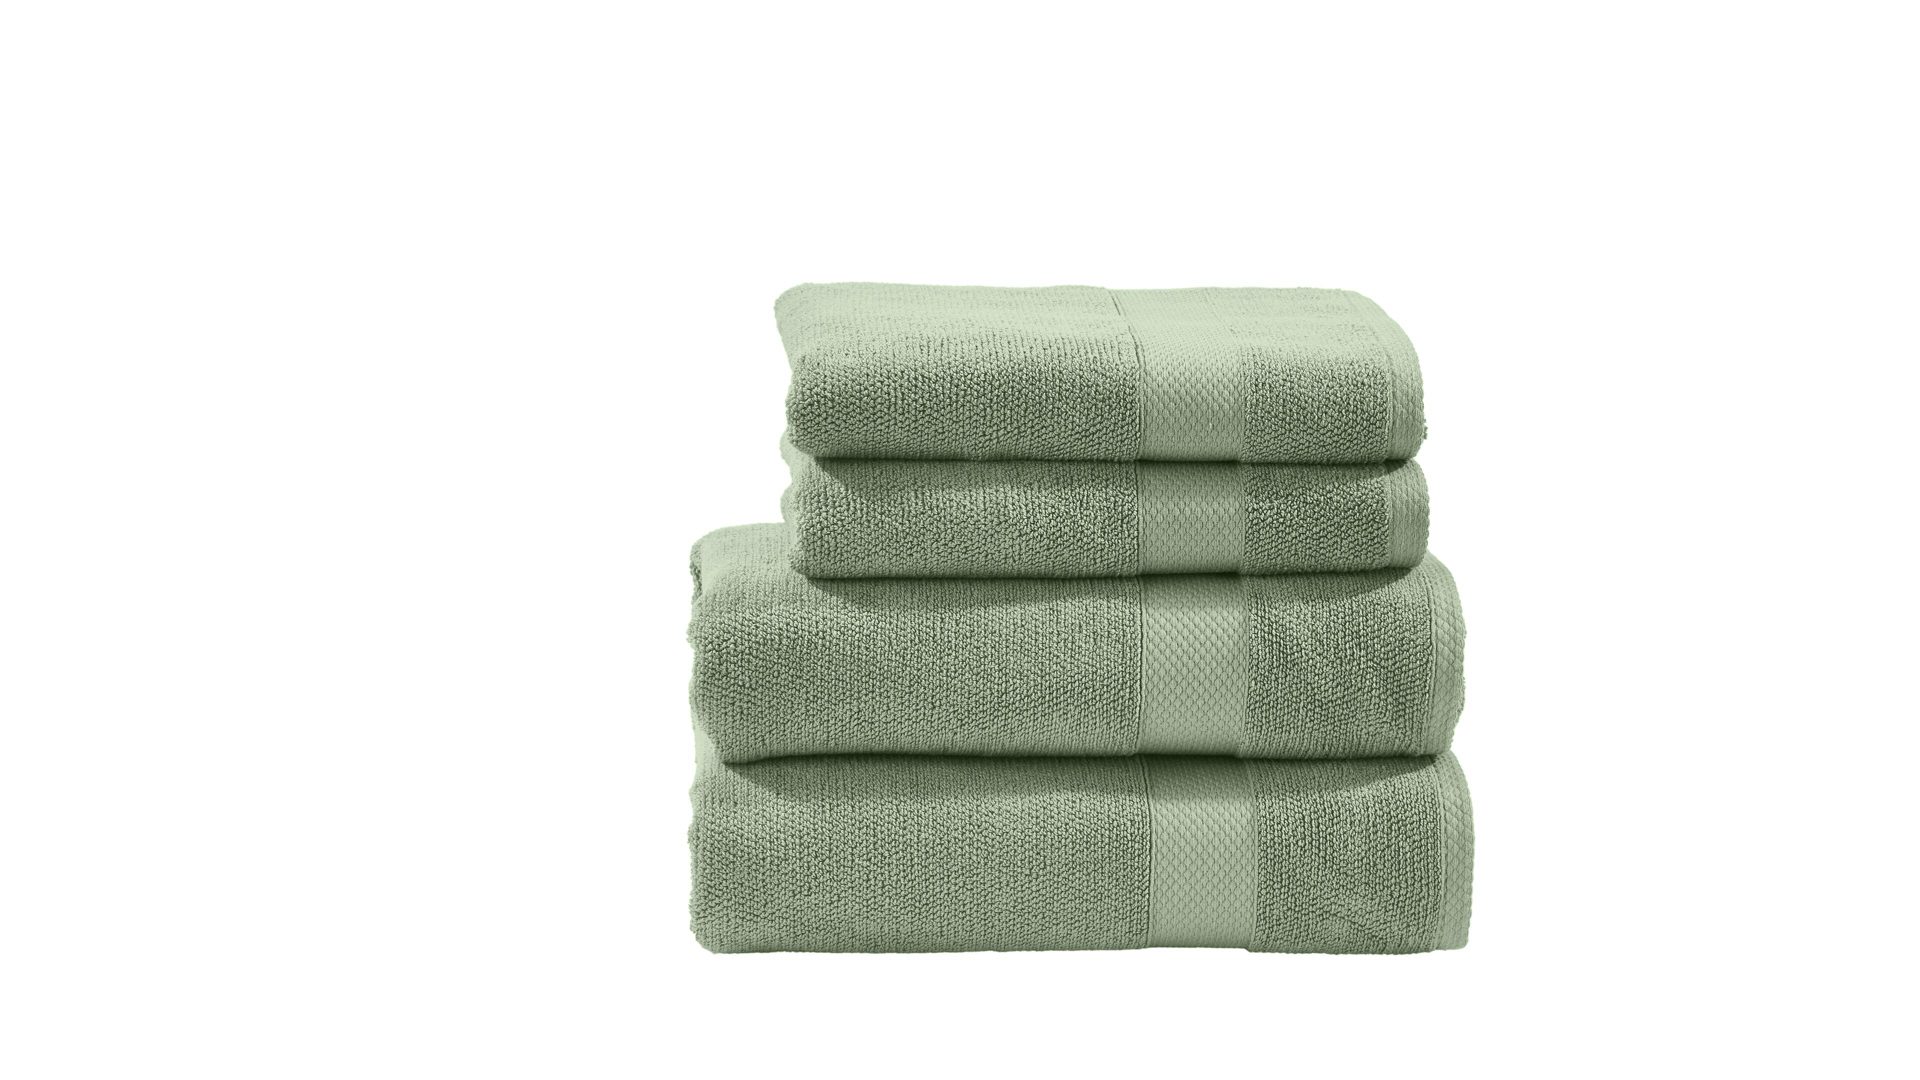 Handtuch-Set Done® by karabel home company aus Stoff in Pastellfarben DONE® Handtuch-Set Deluxe eisbergfarbene Baumwolle – vierteilig